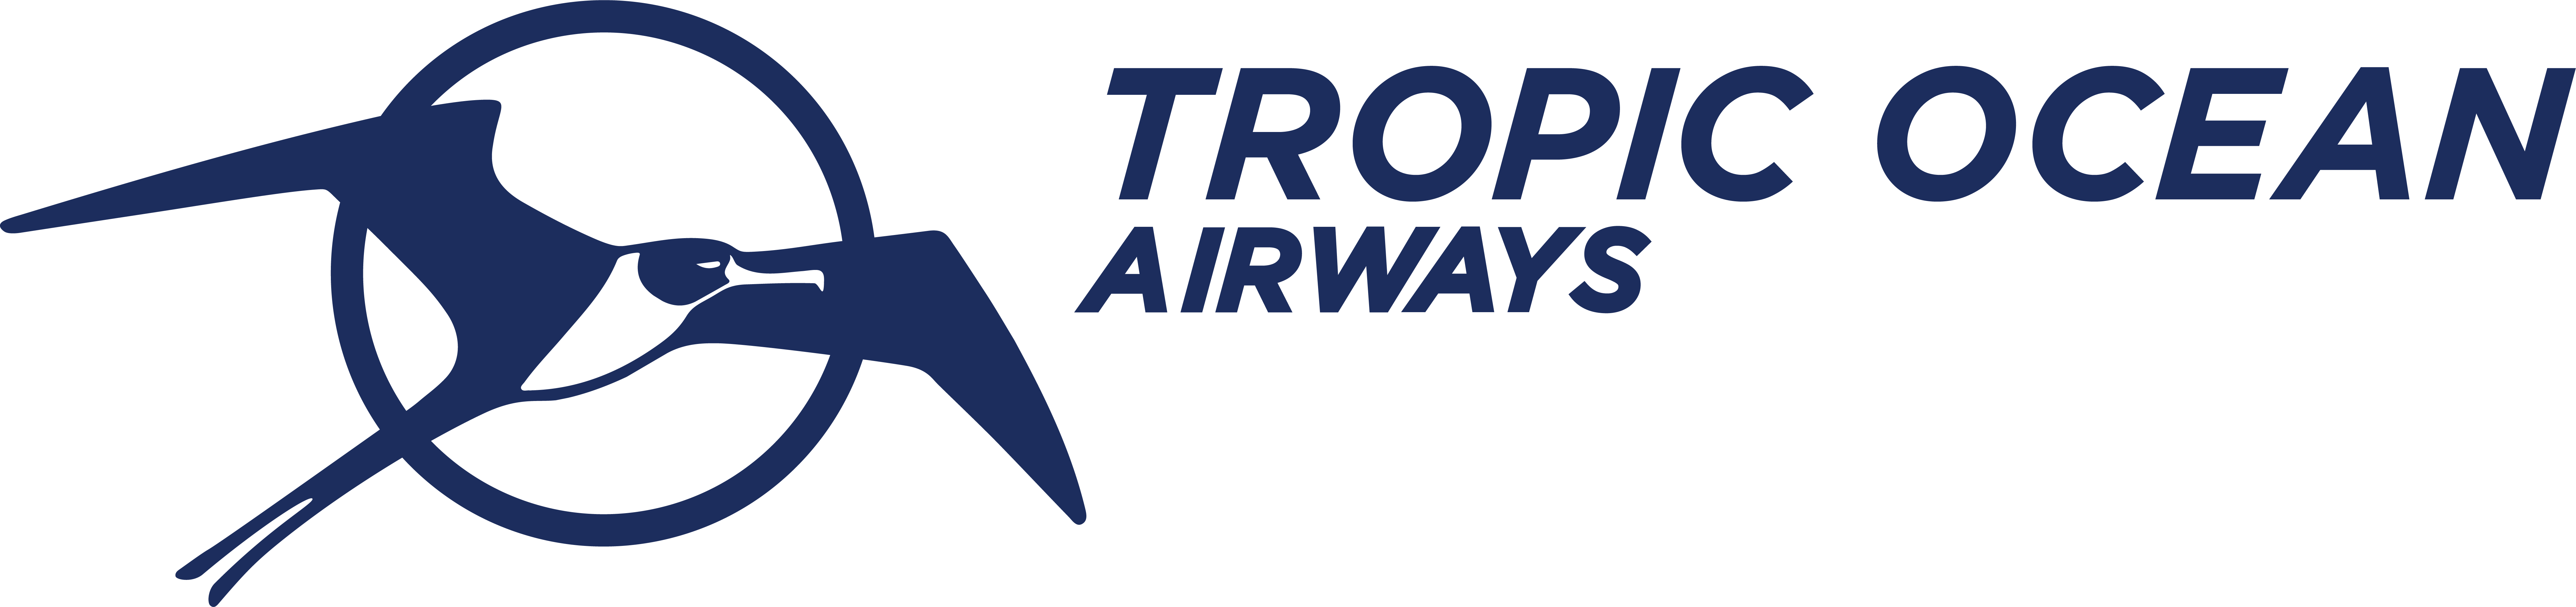 Tropic Ocean Airways_Blue_Full_Logo-1